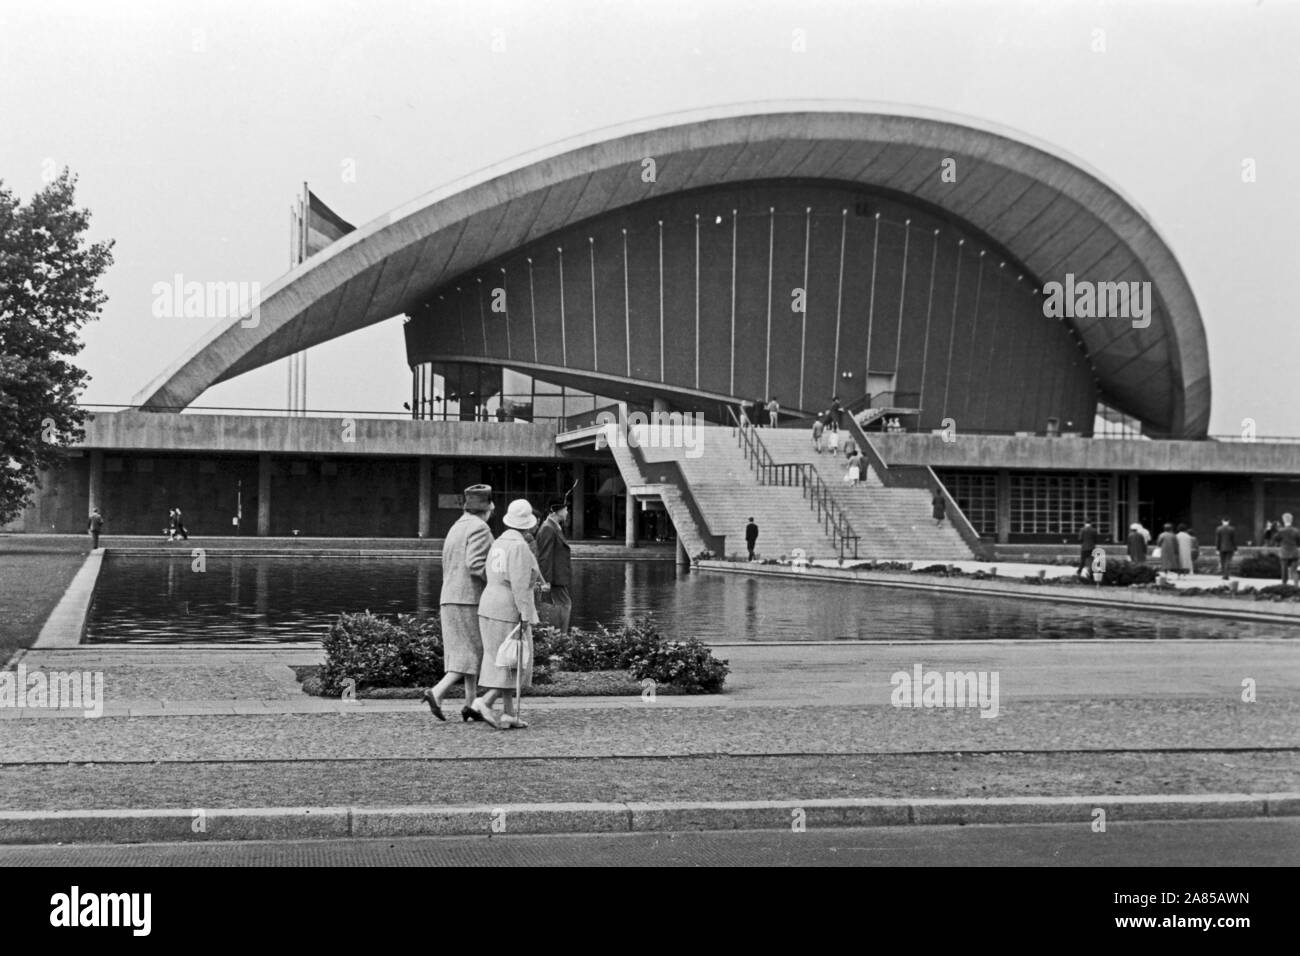 Kongresshalle an der John Foster Dulles Allee im Ortsteil Tiergarten in Berlin, Deutschland 1961 sterben. Kongress- und Veranstaltungshalle am Tiergarten in Berlin, Deutschland 1961. Stockfoto